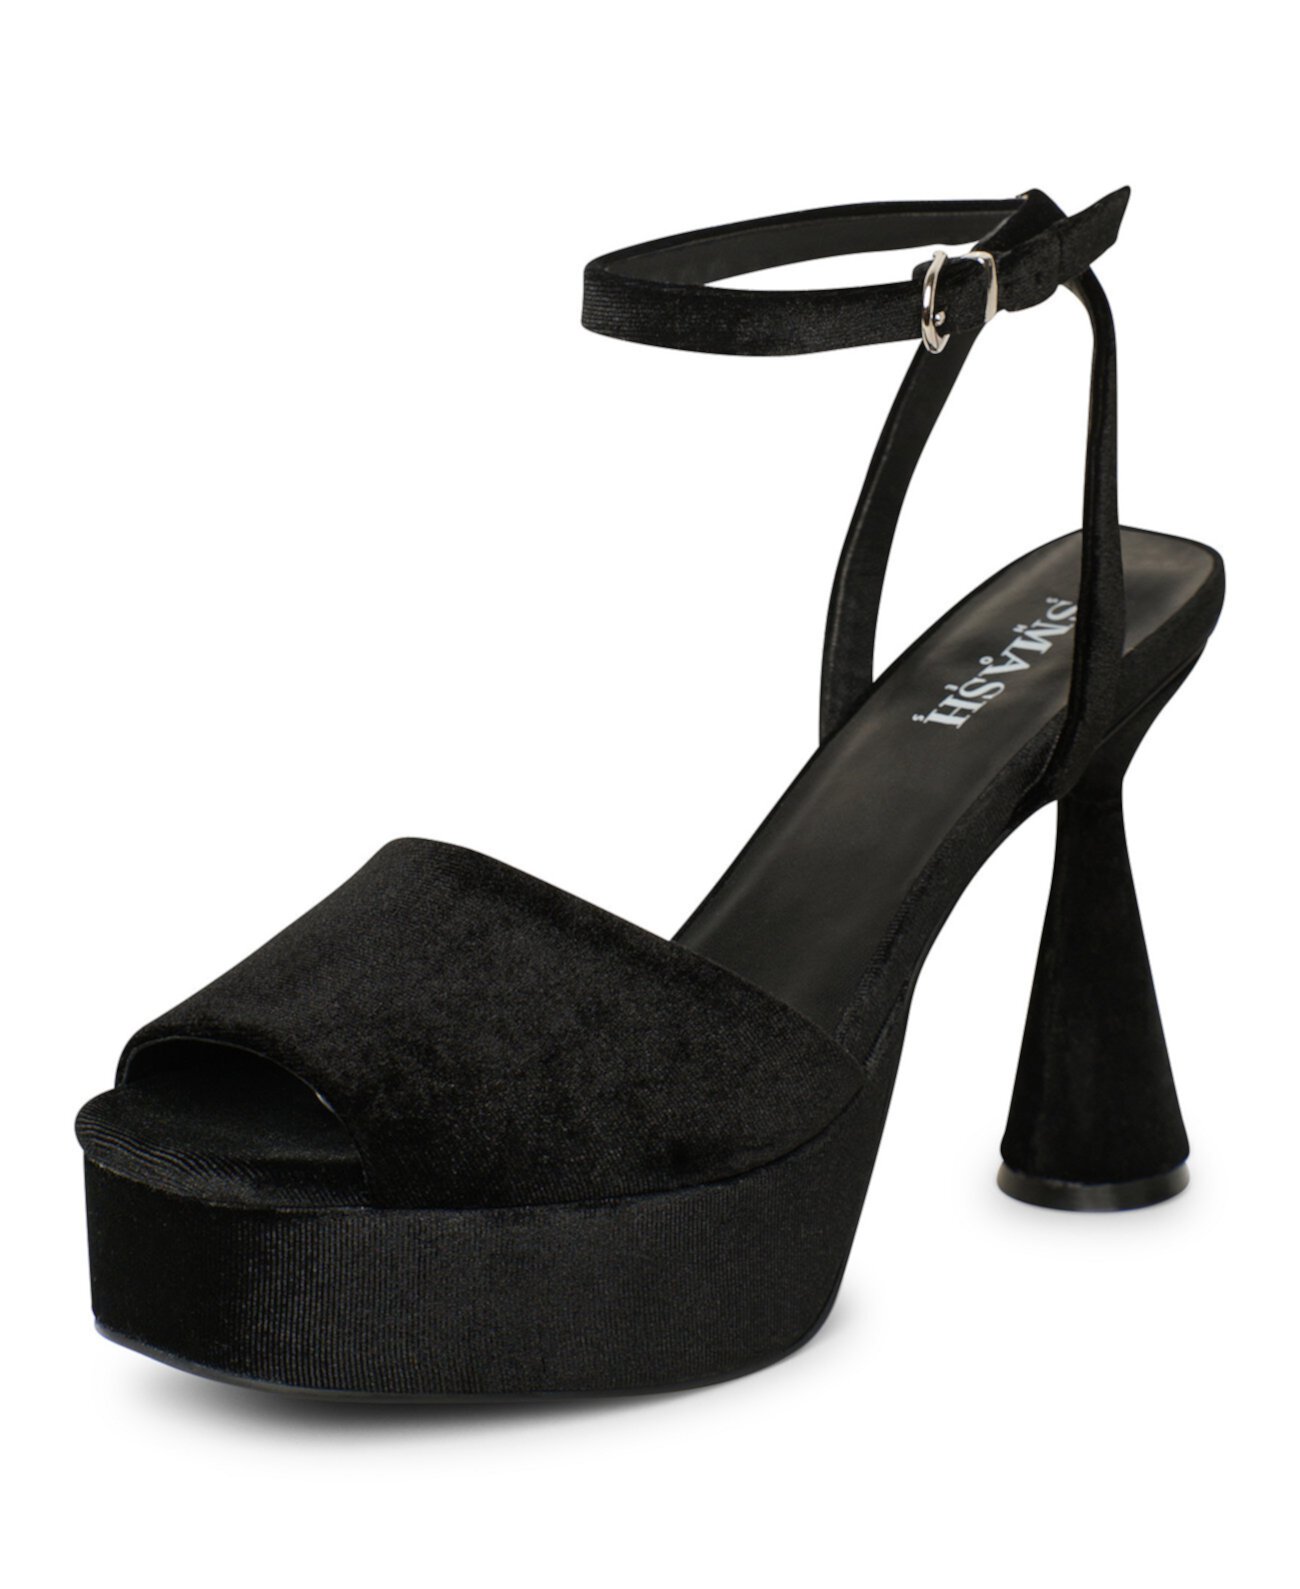 Женские модельные сандалии Flora на архитектурном каблуке с открытым носком и платформе — увеличенные размеры 10–14 SMASH Shoes